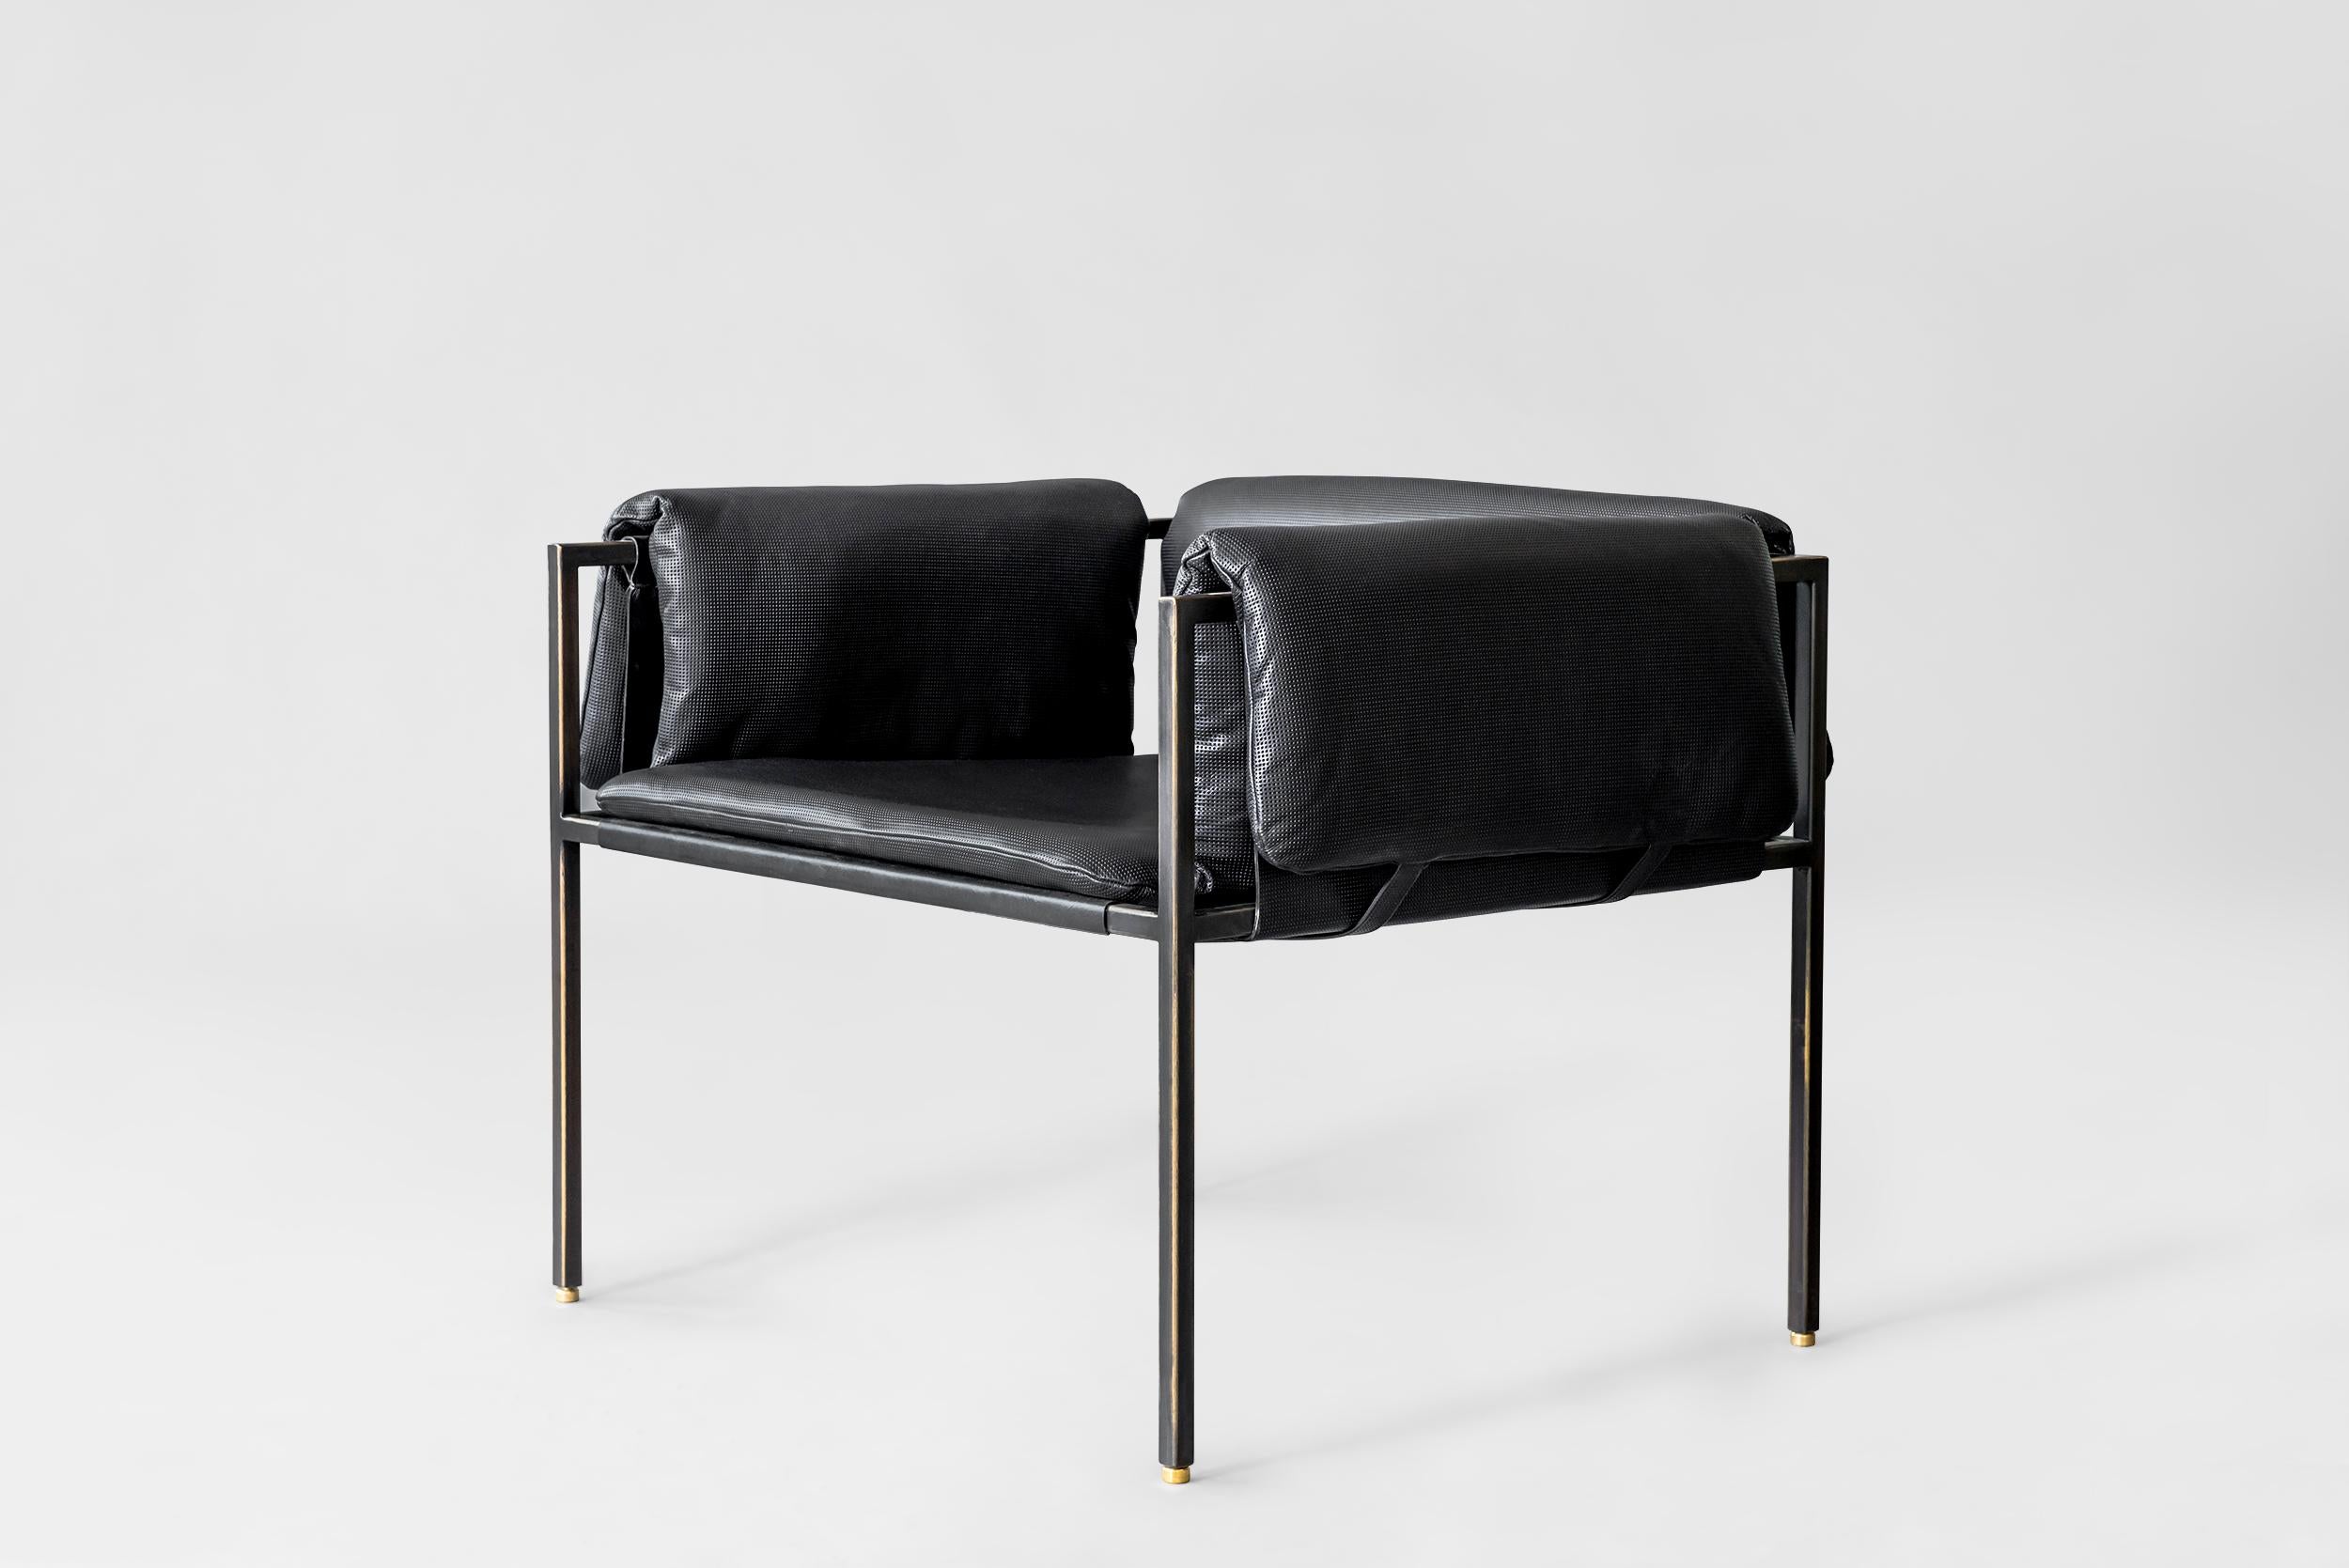 Flow lounge chair von Atra Design
Abmessungen: T 75,5 x B 75,6 x H 60,2 cm
MATERIALIEN: Lamborgini-Leder, geschwärzter Stahl mit Messingkappen

Atra Design
Wir sind Atra, eine Möbelmarke, die von Atra form A, einer in Mexiko-Stadt ansässigen